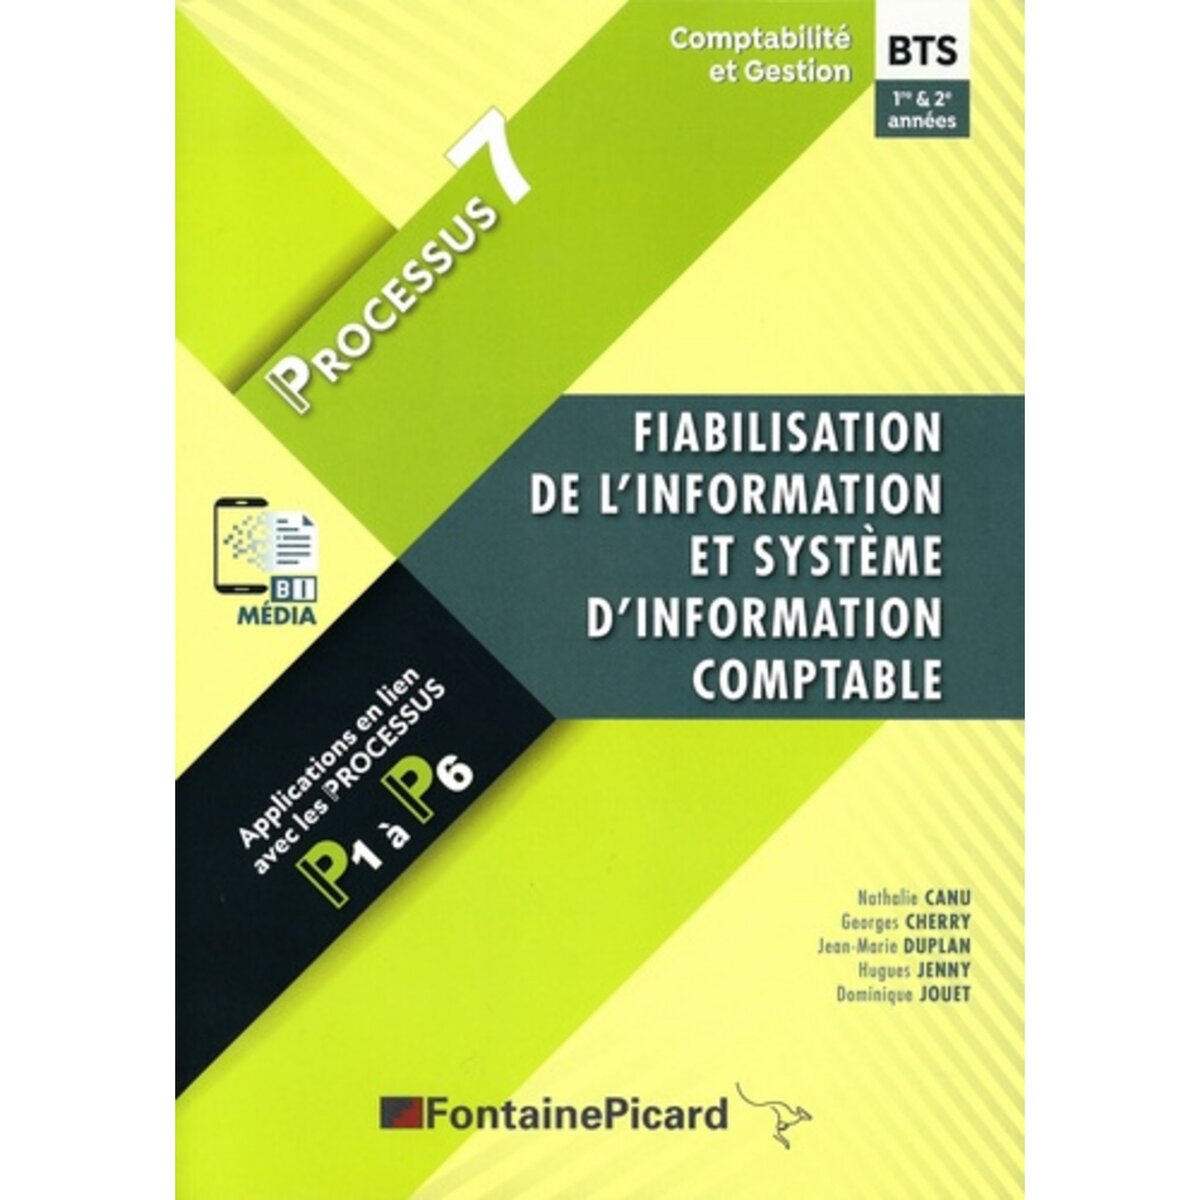  FIABILISATION DE L'INFORMATION ET SYSTEME D'INFORMATION COMPTABLE PROCESSUS 7 BTS CG 1RE & 2E ANNEES. EDITION 2021-2022, Canu Nathalie